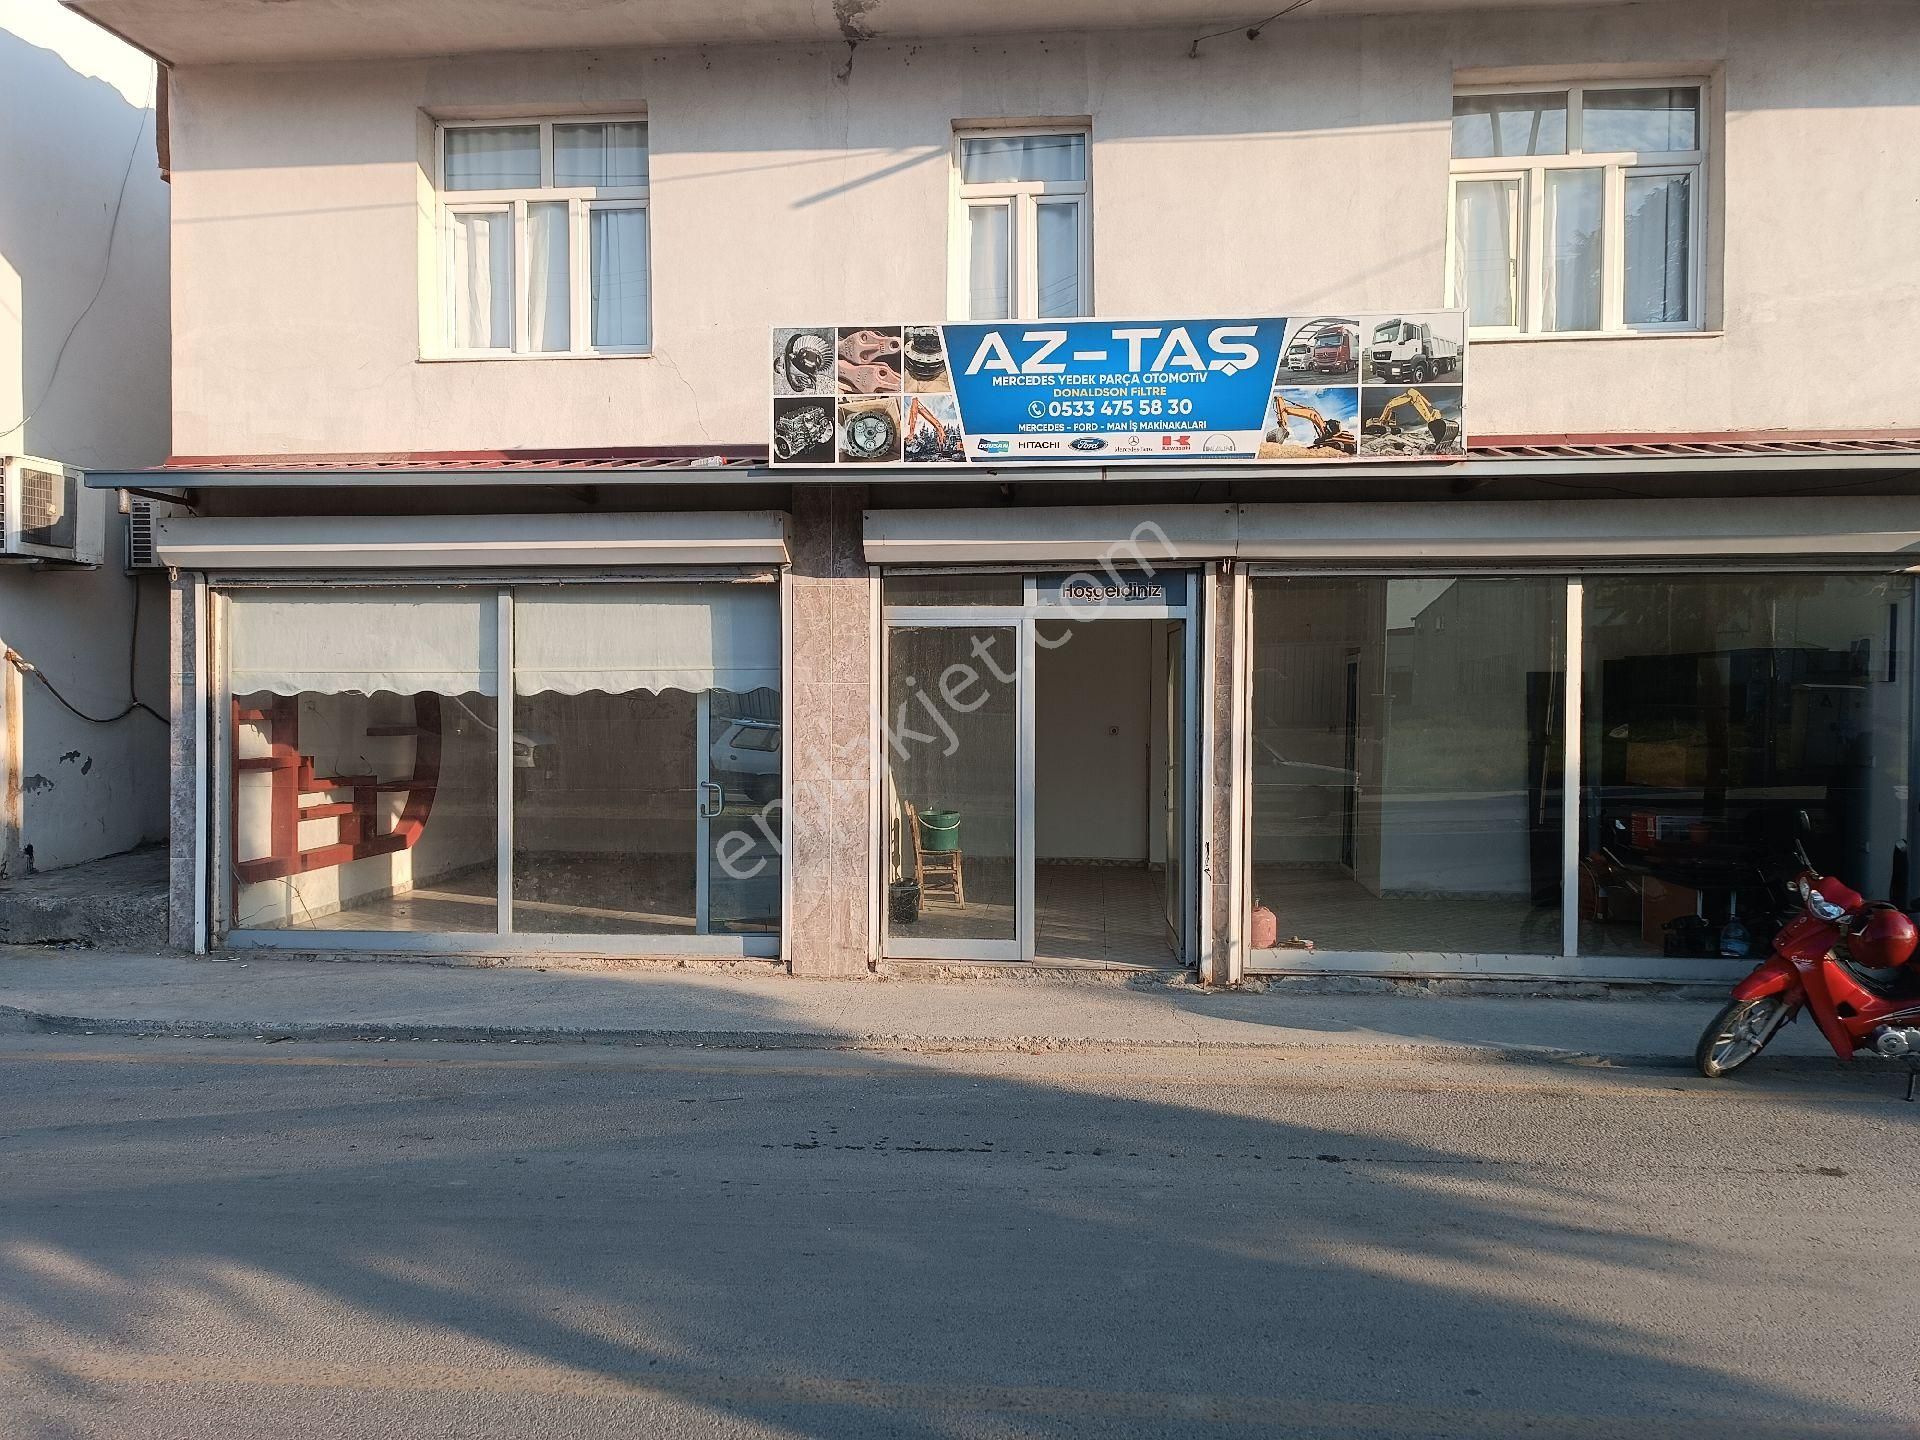 Tarsus Tozkoparan Zahit Kiralık Dükkan & Mağaza KİRALIK DÜKKAN ANA CADDE ÜZERİ 